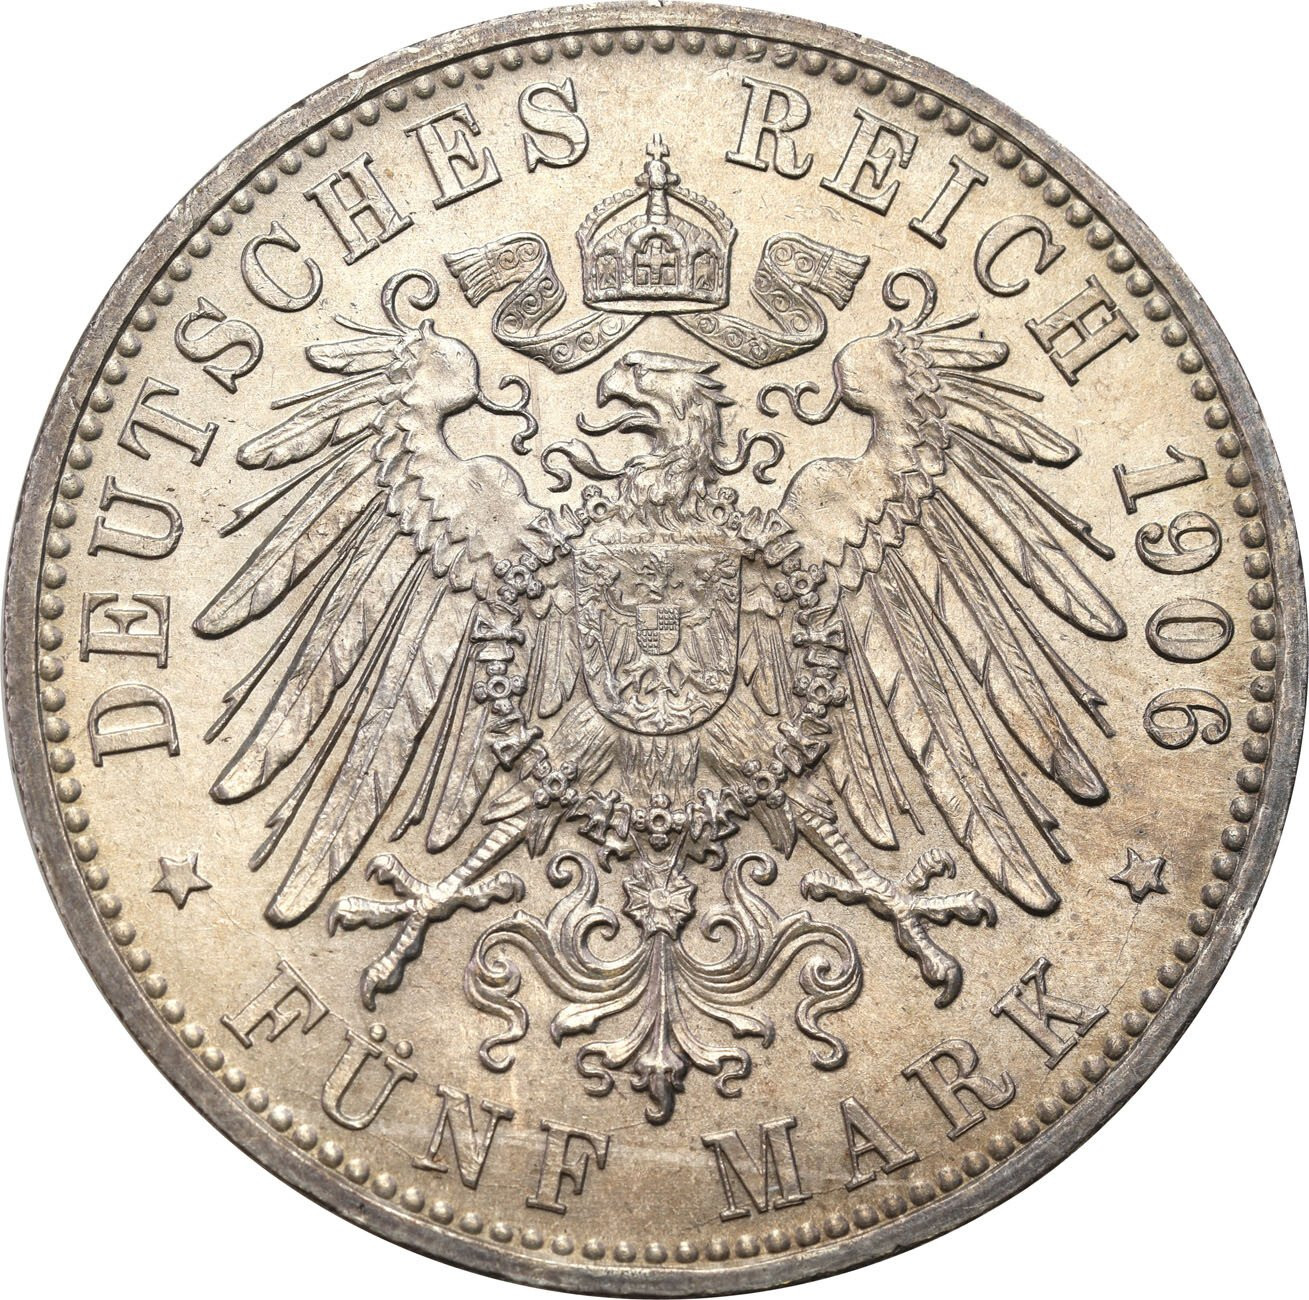 Niemcy, Badenia. 5 marek 1906, Karlsruhe – PIĘKNE